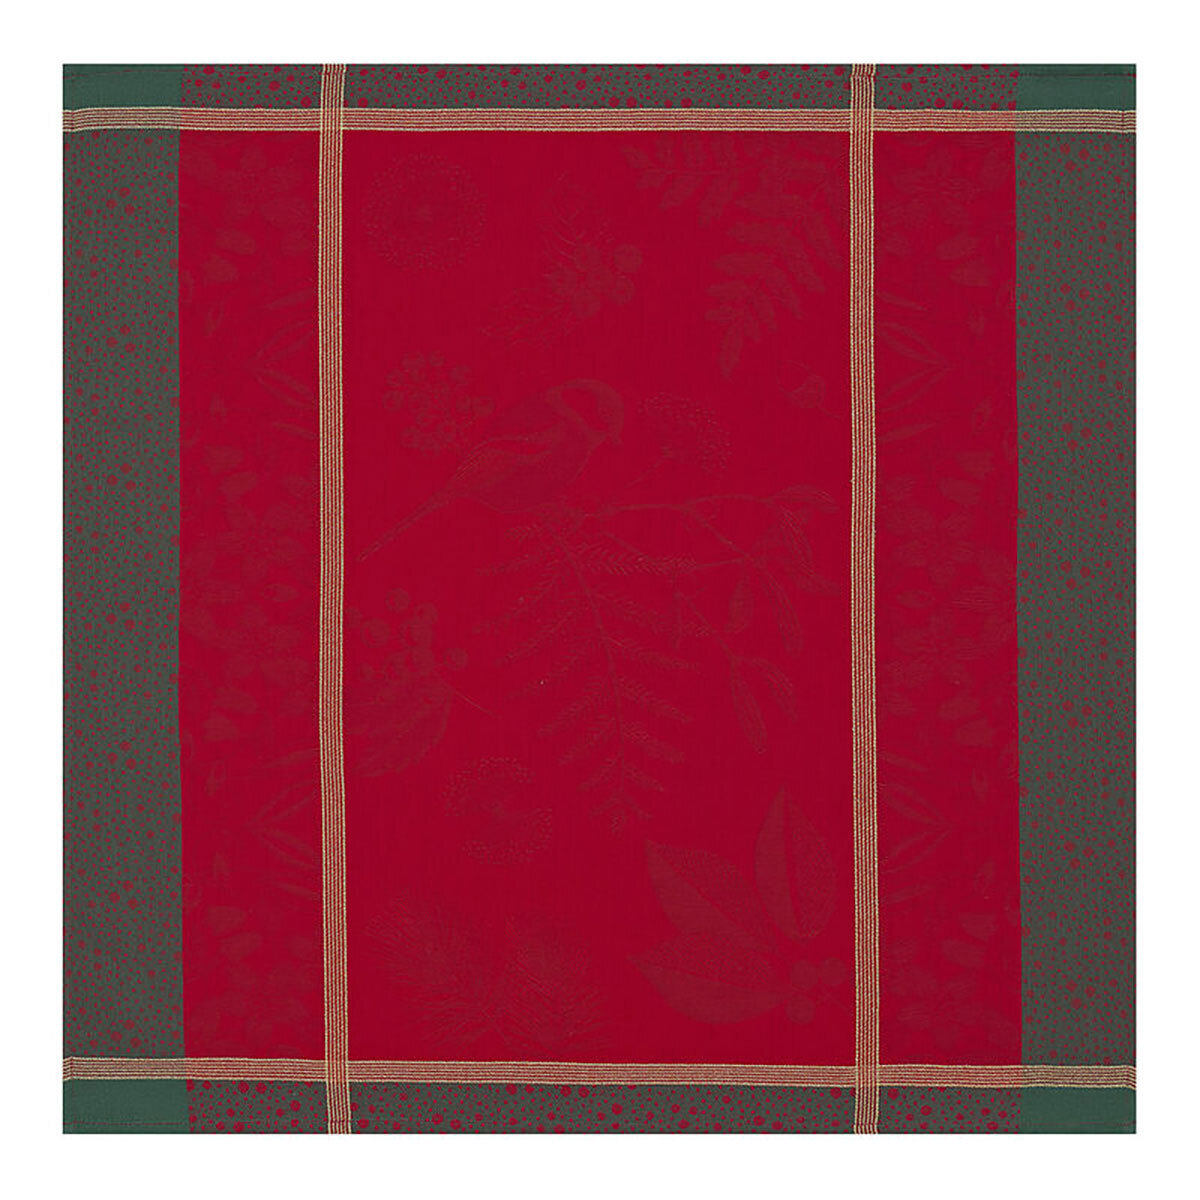 Le Jacquard Francais Napkin Poesie D'Hiver Red 99% Cotton 1% Lurex 23 x 23 Inch 27724 Set of 4